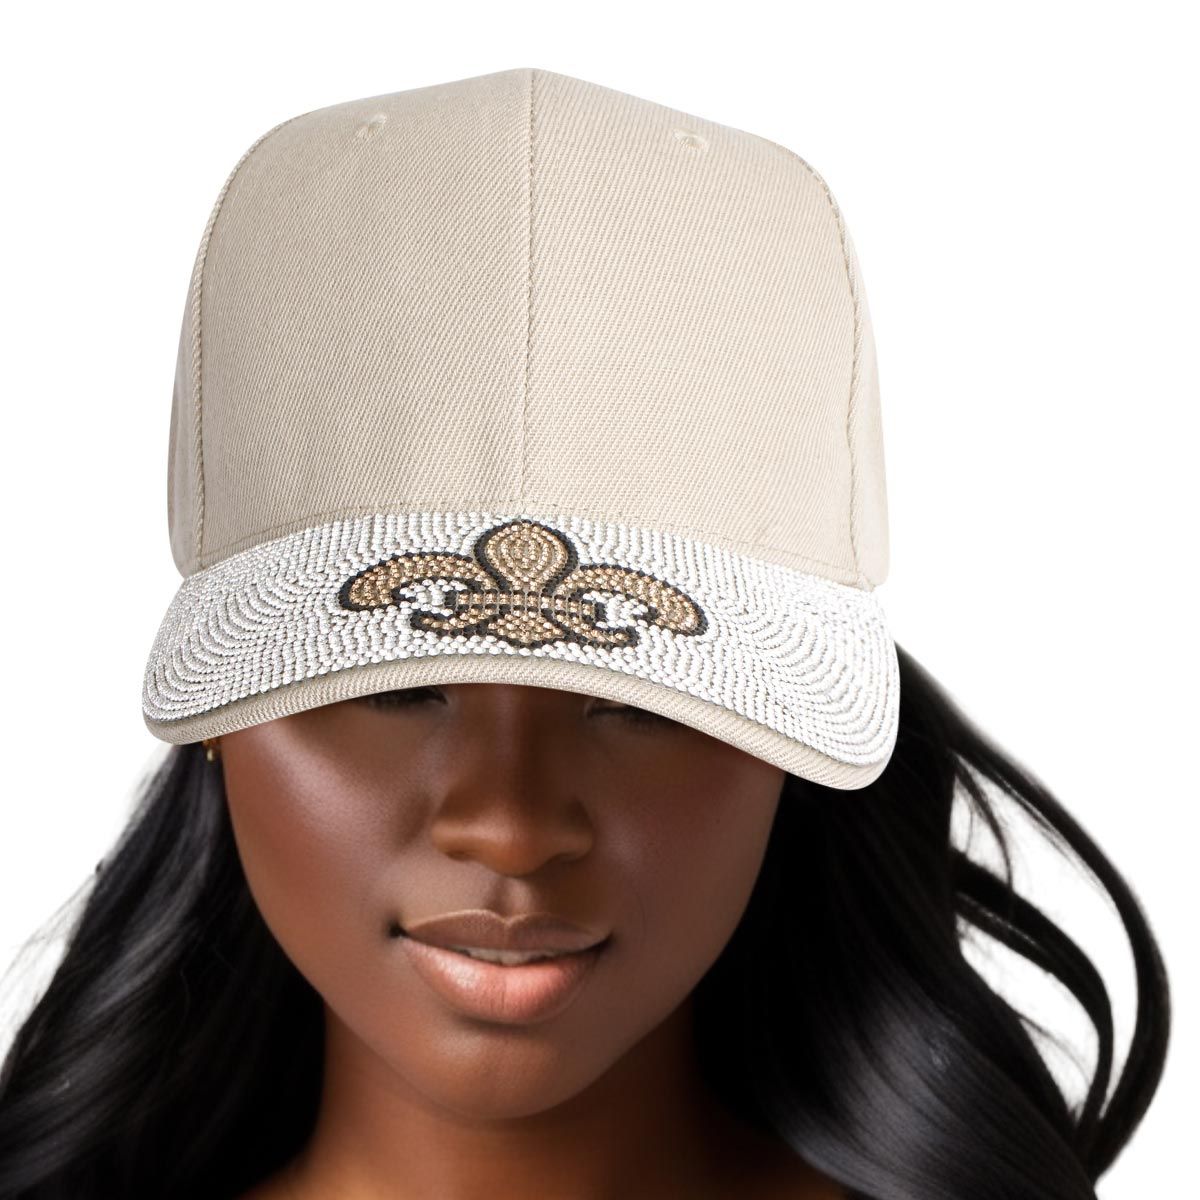 Hat Khaki Fleur de Lis Bling Baseball Cap Women - Premium Wholesale Fashion Accessories from Pinktown - Just $14! Shop now at chiquestyles